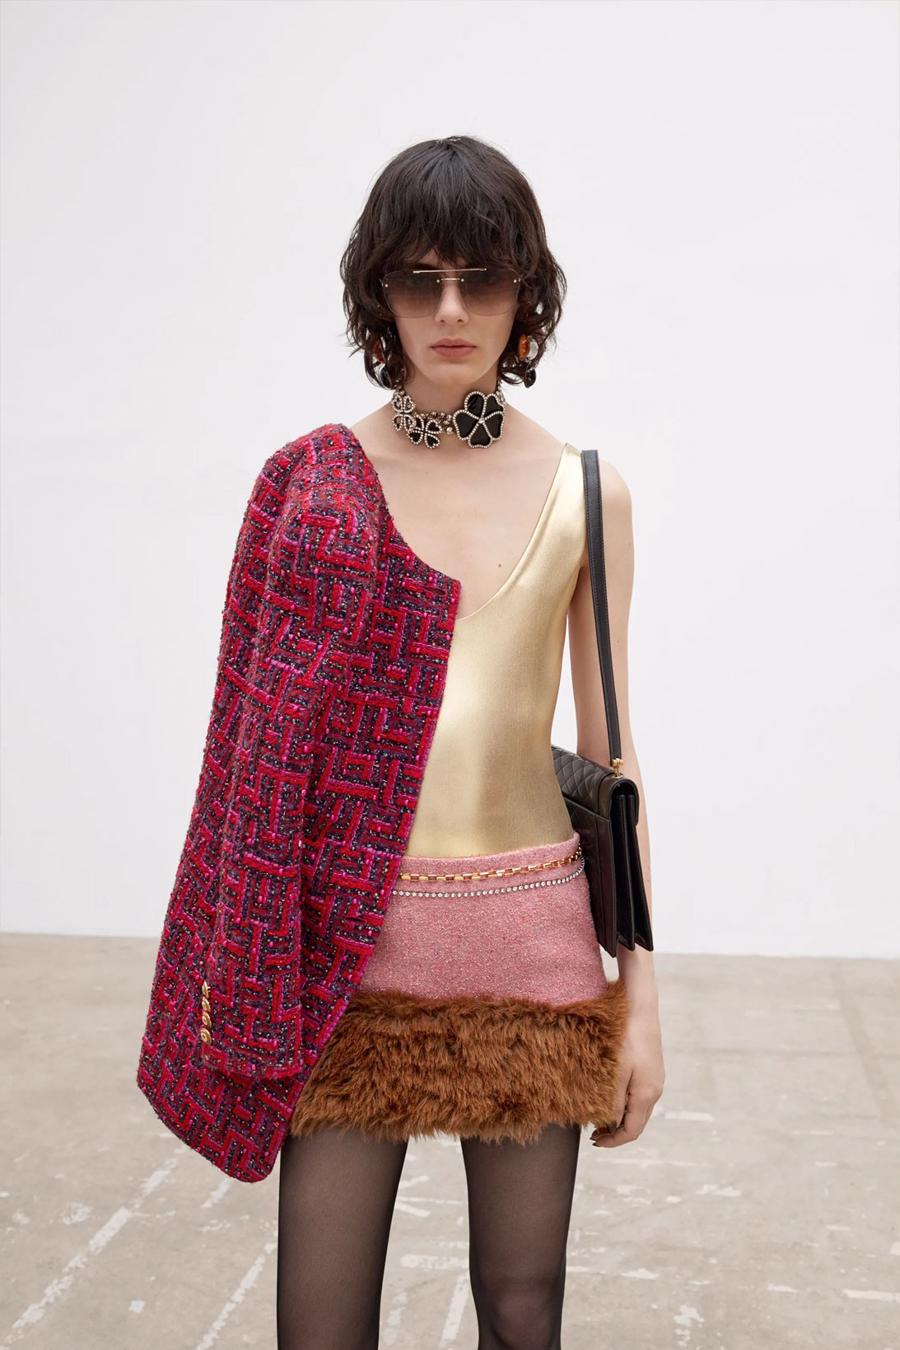 Saint Laurent và Chanel hợp tác chống đạo nhái trong thời trang - Ảnh 1